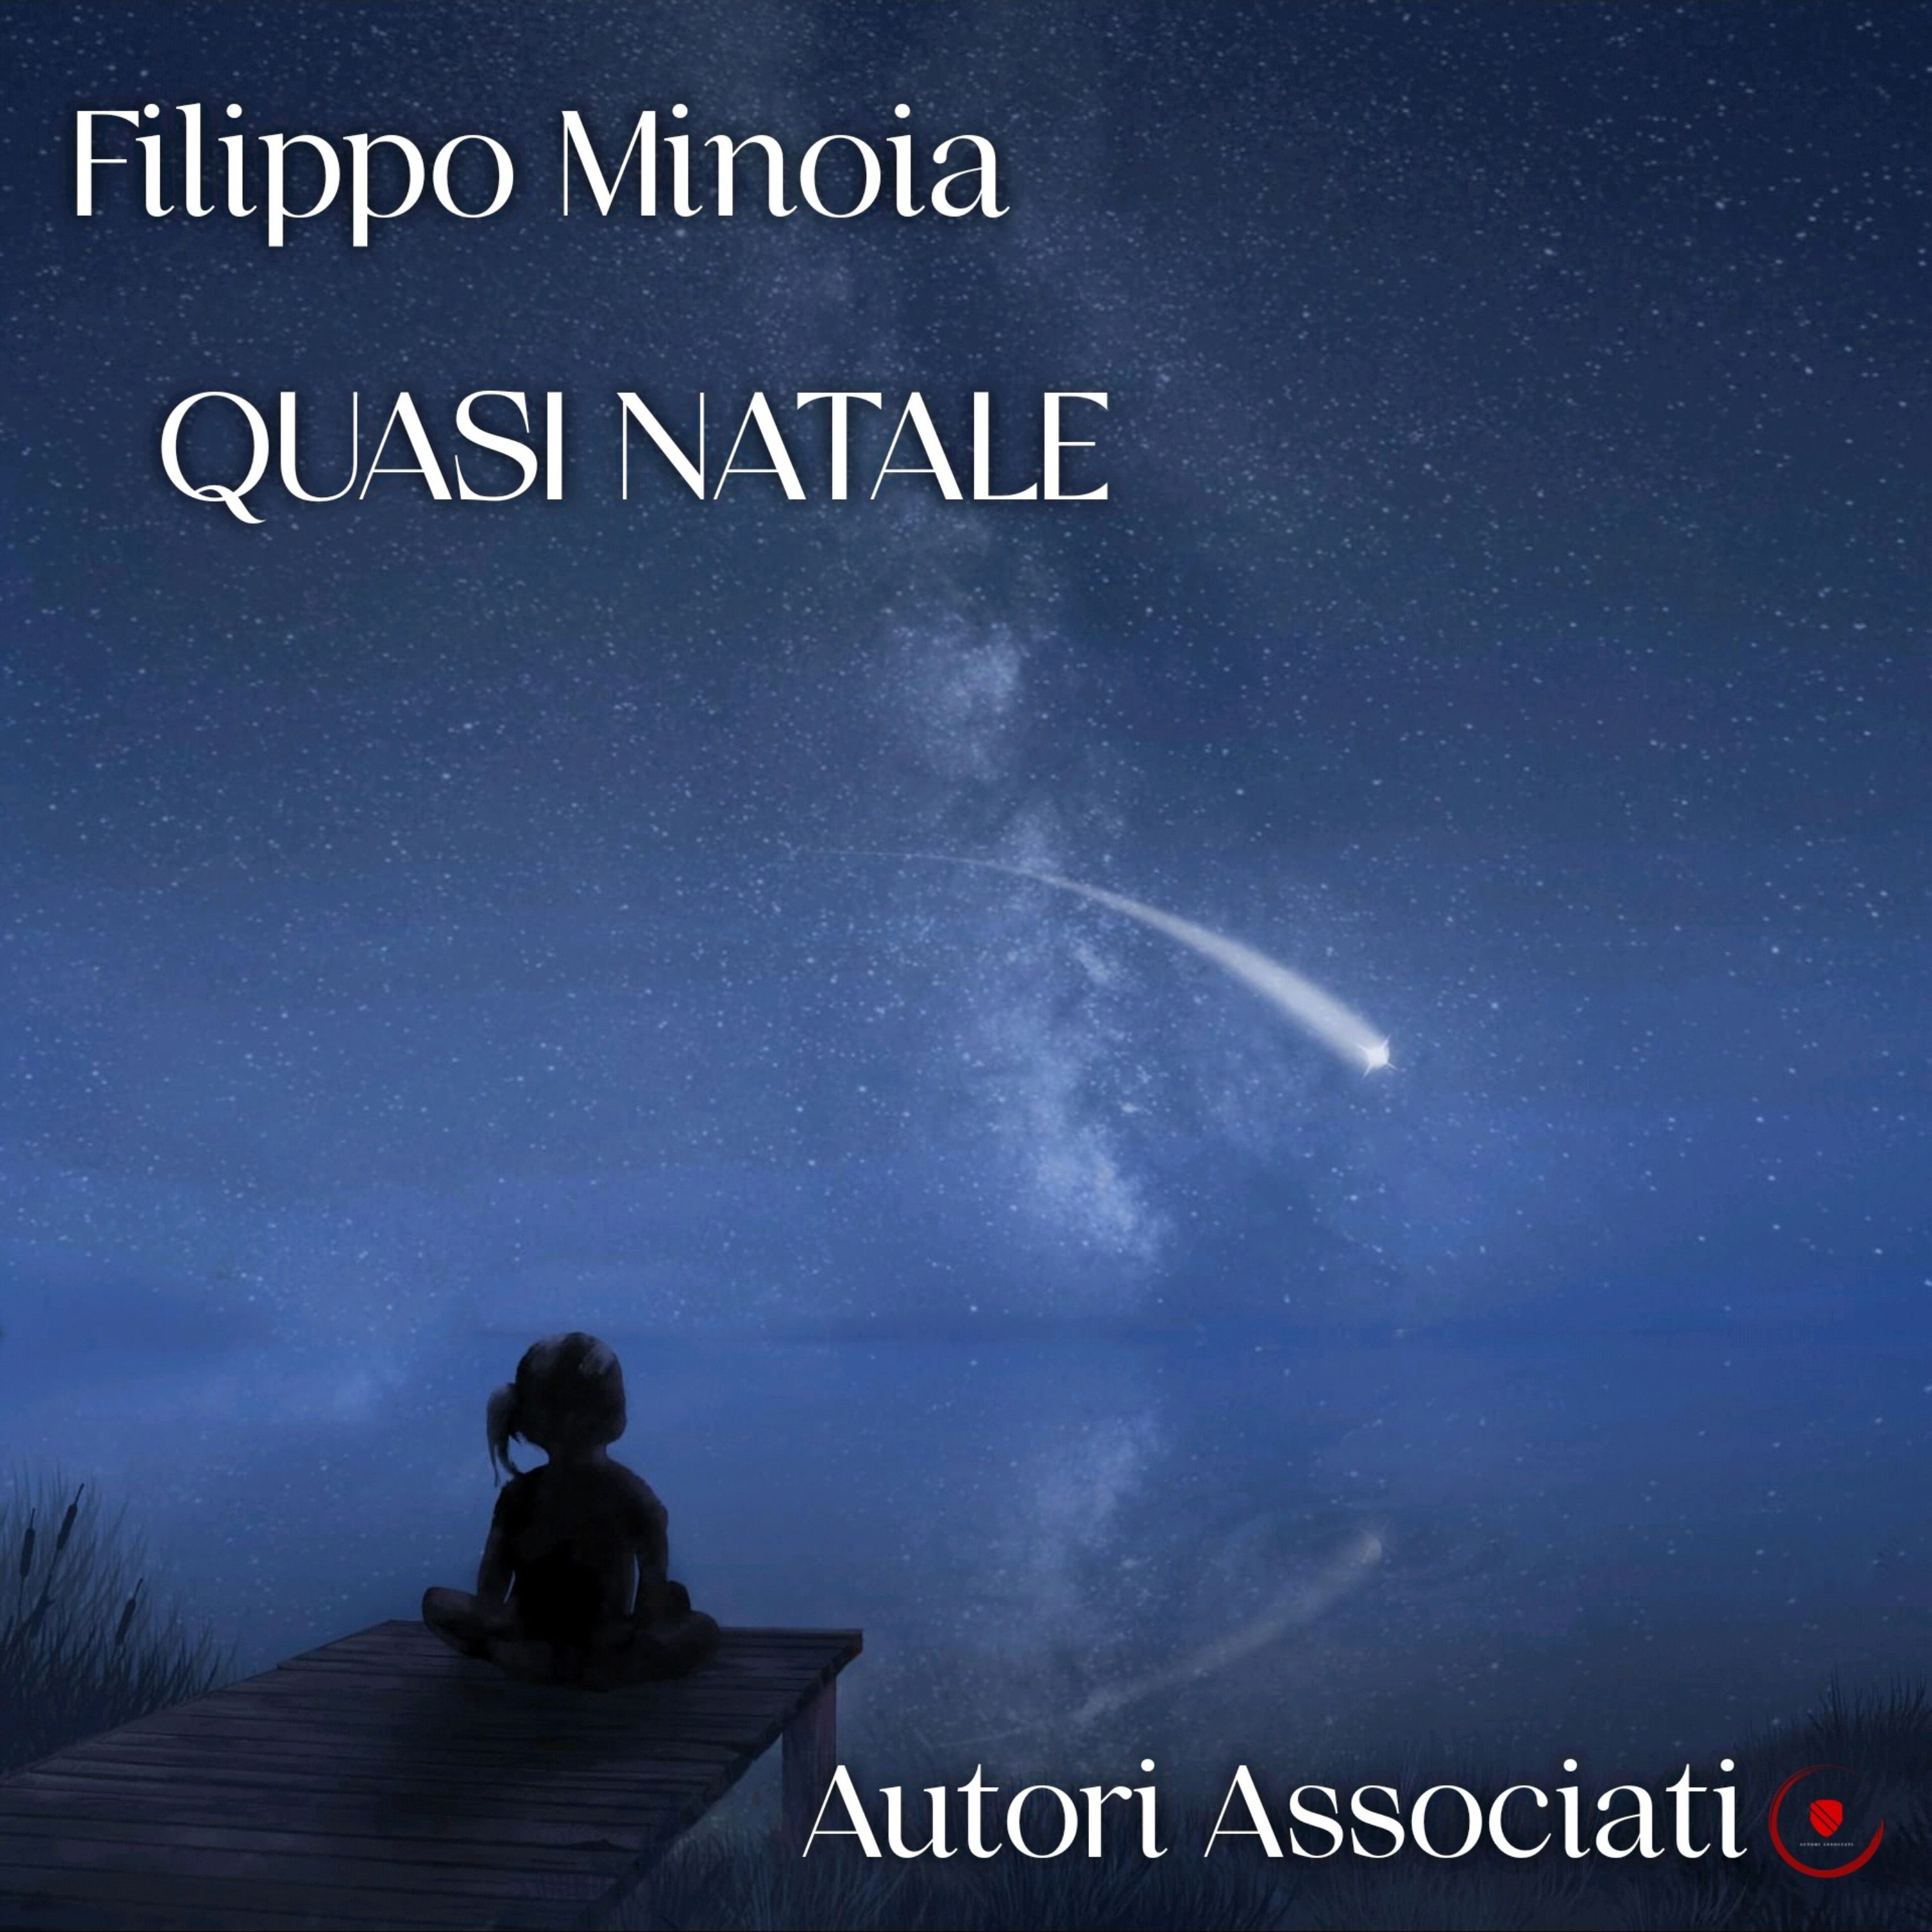 Il collettivo di compositori, autori e interpreti provenienti da tutta Italia AUTORI ASSOCIATI  PUBBLICA IL NUOVO SINGOLO  “QUASI NATALE”